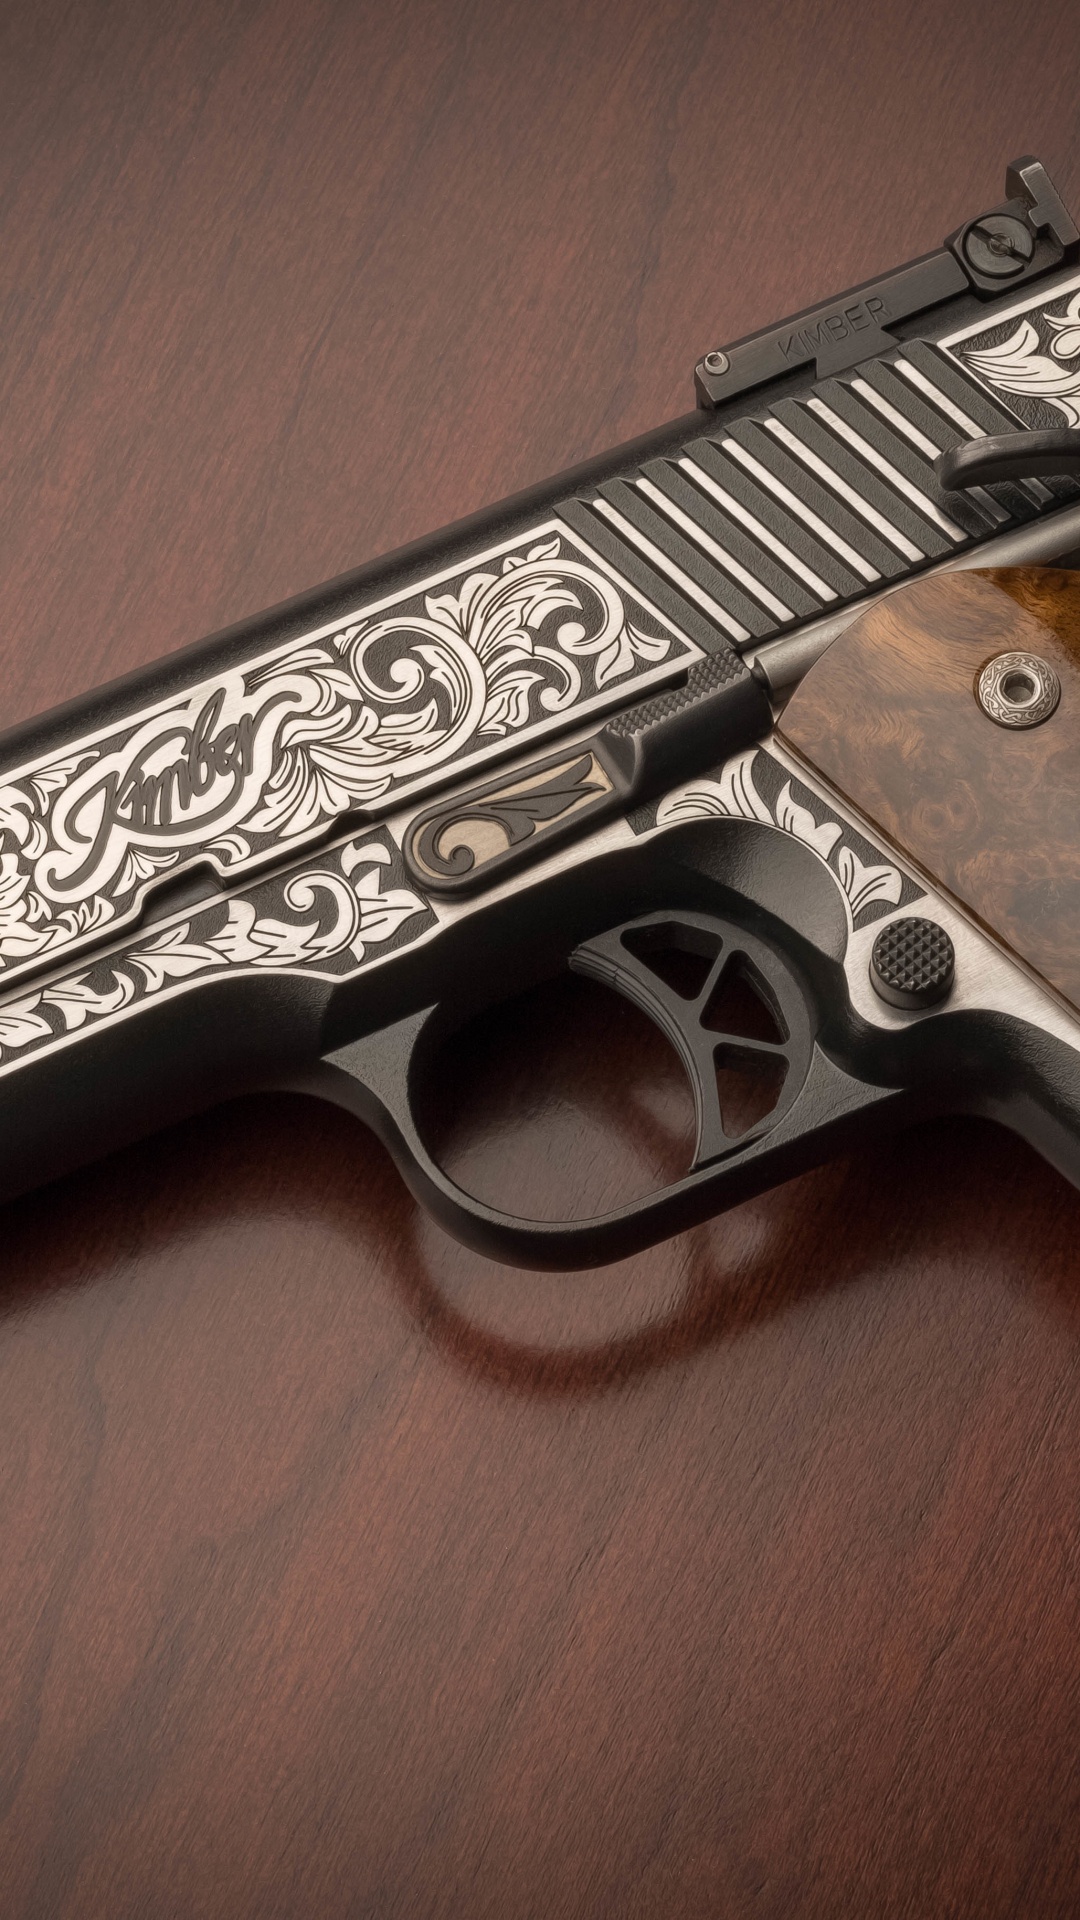 M1911 Pistole, Feuerwaffe, Trigger, Gun Barrel, Pistole Zubehör. Wallpaper in 1080x1920 Resolution